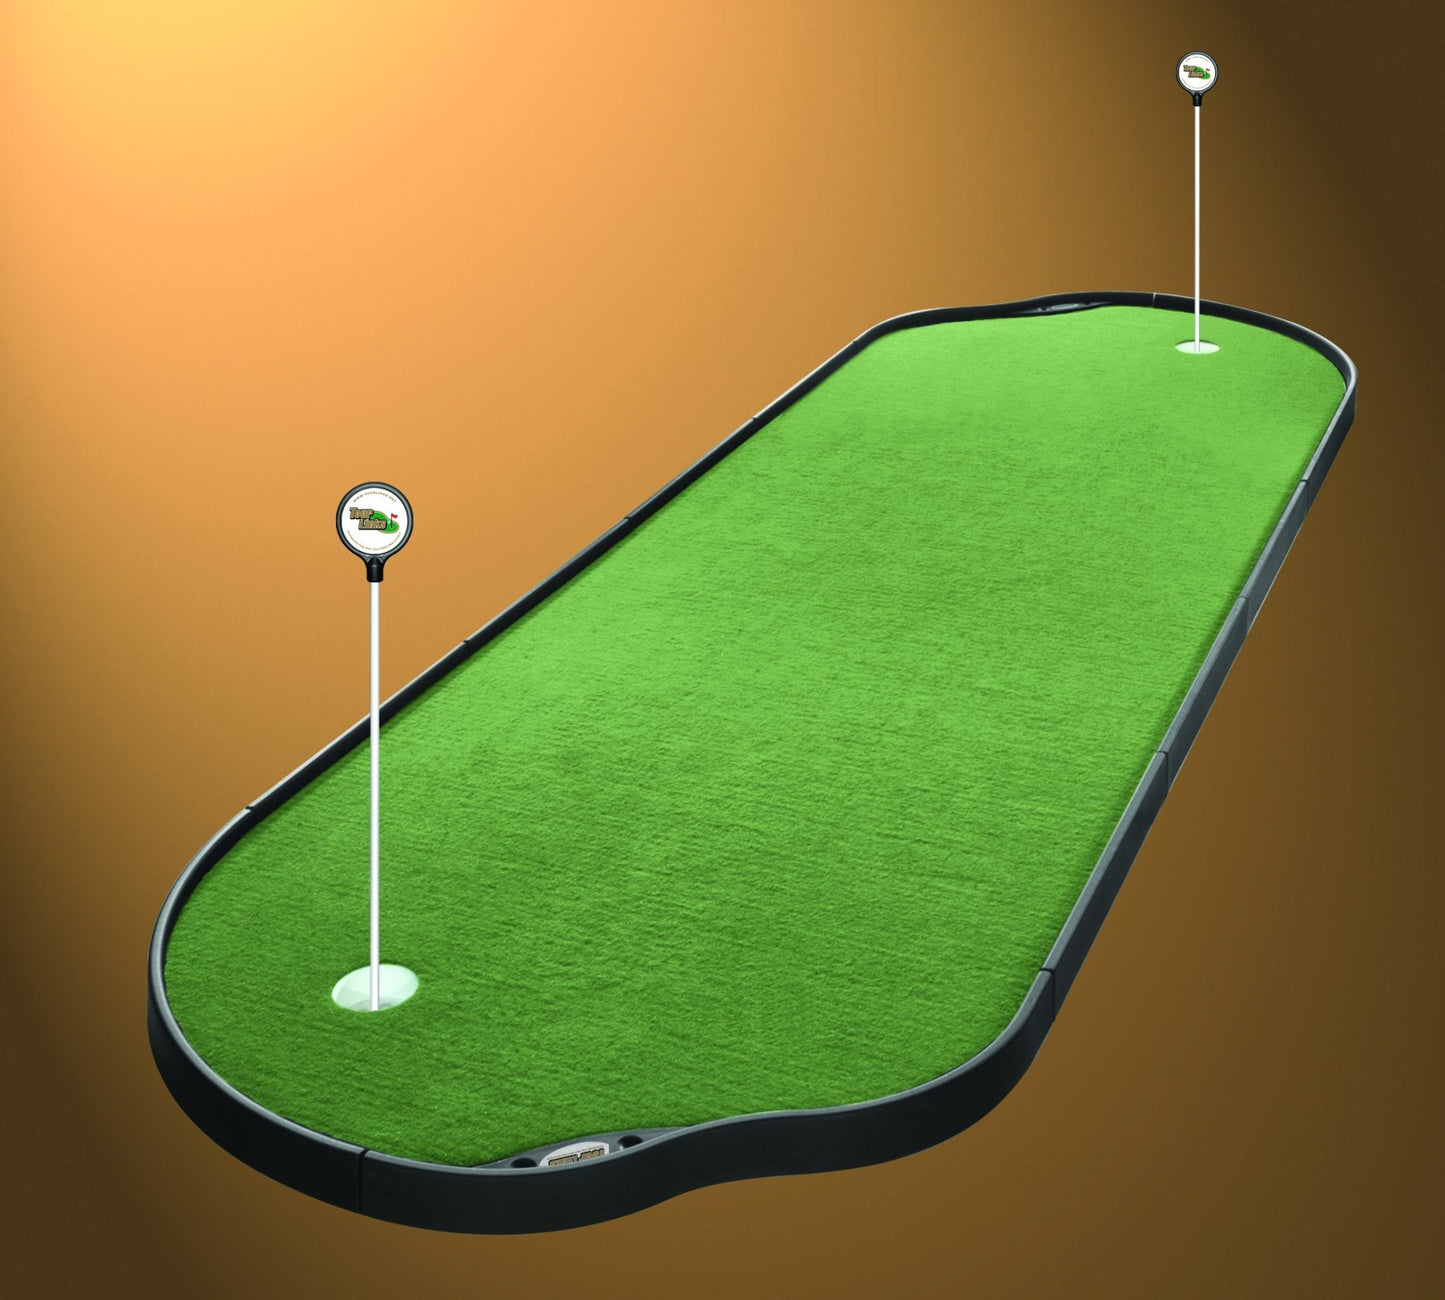 Pro Putt Systems - 4'x 12' Putting Green - Big Horn Golfer